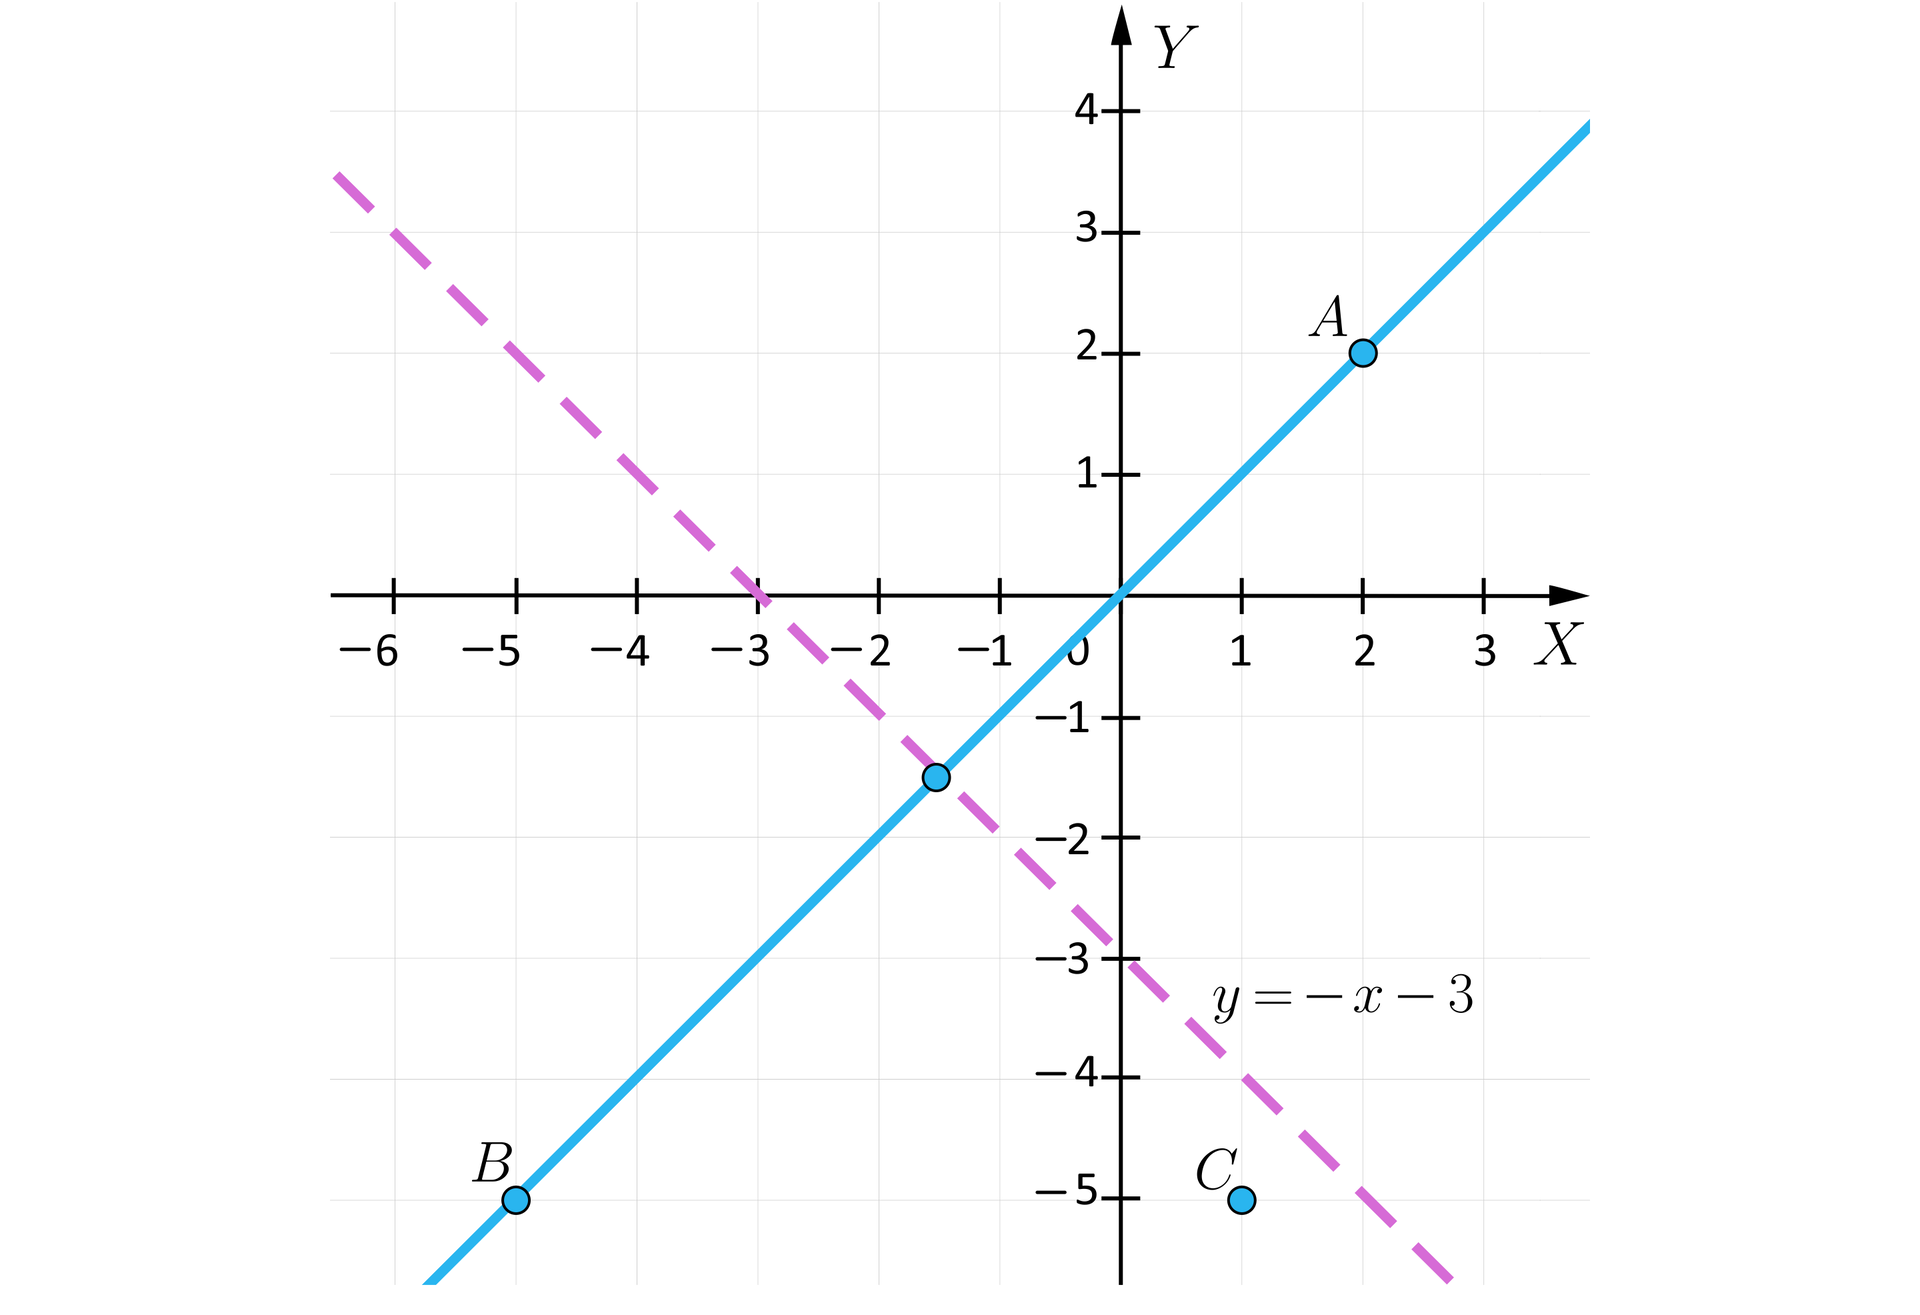 Grafika przedstawia układ współrzędnych z poziomą osią x od minus sześciu do trzech i pionową osią y od minus pięciu do czterech. Na płaszczyźnie zaznaczone zostały trzy punkty i dwie proste. Punkt A ma współrzędne: początek nawiasu, 2, 2, zamknięcie nawiasu. Punkt B ma współrzędne: początek nawiasu, minus 5, minus 5, zamknięcie nawiasu. Punkt C ma współrzędne: początek nawiasu, 1, minus 5, zamknięcie nawiasu. Jedna z prostych przechodzi przez punkt A oraz punkt B, prosta ta jest ukośna i przechodzi przez środek układu współrzędnych. Druga prosta została narysowana linią przerywaną i jest podpisana y=-x-3. Prosta ta przecina oś y w punkcie początek nawiasu, 0, minus 3, zamknięcie nawiasu oraz przecina oś x w punkcie początek nawiasu, minus 3, 0, zamknięcie nawiasu. Proste przecinają się w trzeciej ćwiartce układu współrzędnych.